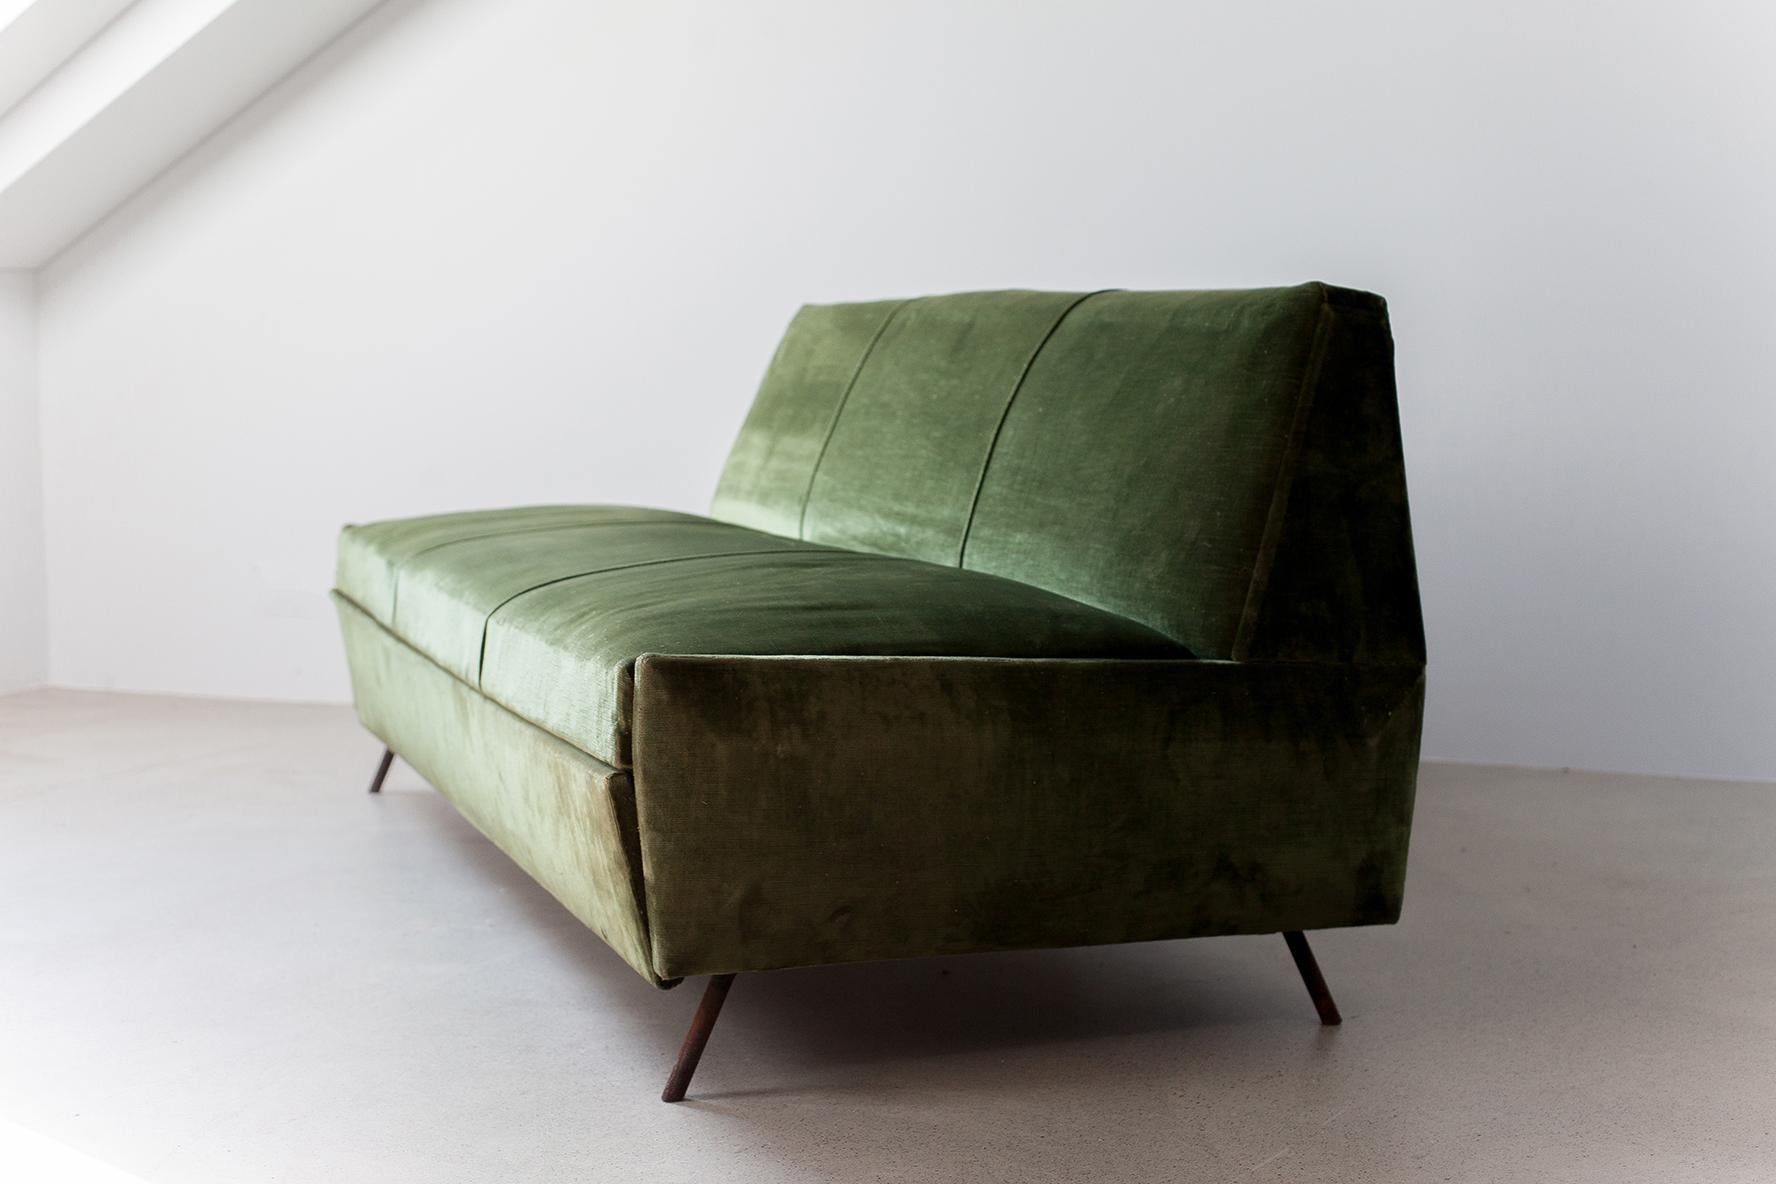 Schönes, stilvolles Schlafsofa im Vintage-Stil, entworfen von Marco Zanuso für Arflex Italien in den 1950er Jahren. Modell Sleep-O-Matic mit 2 Beinen anstelle von 3. Das Sofa ist mit grünem Vintage-Samt gepolstert. Sie können in Betracht ziehen, es